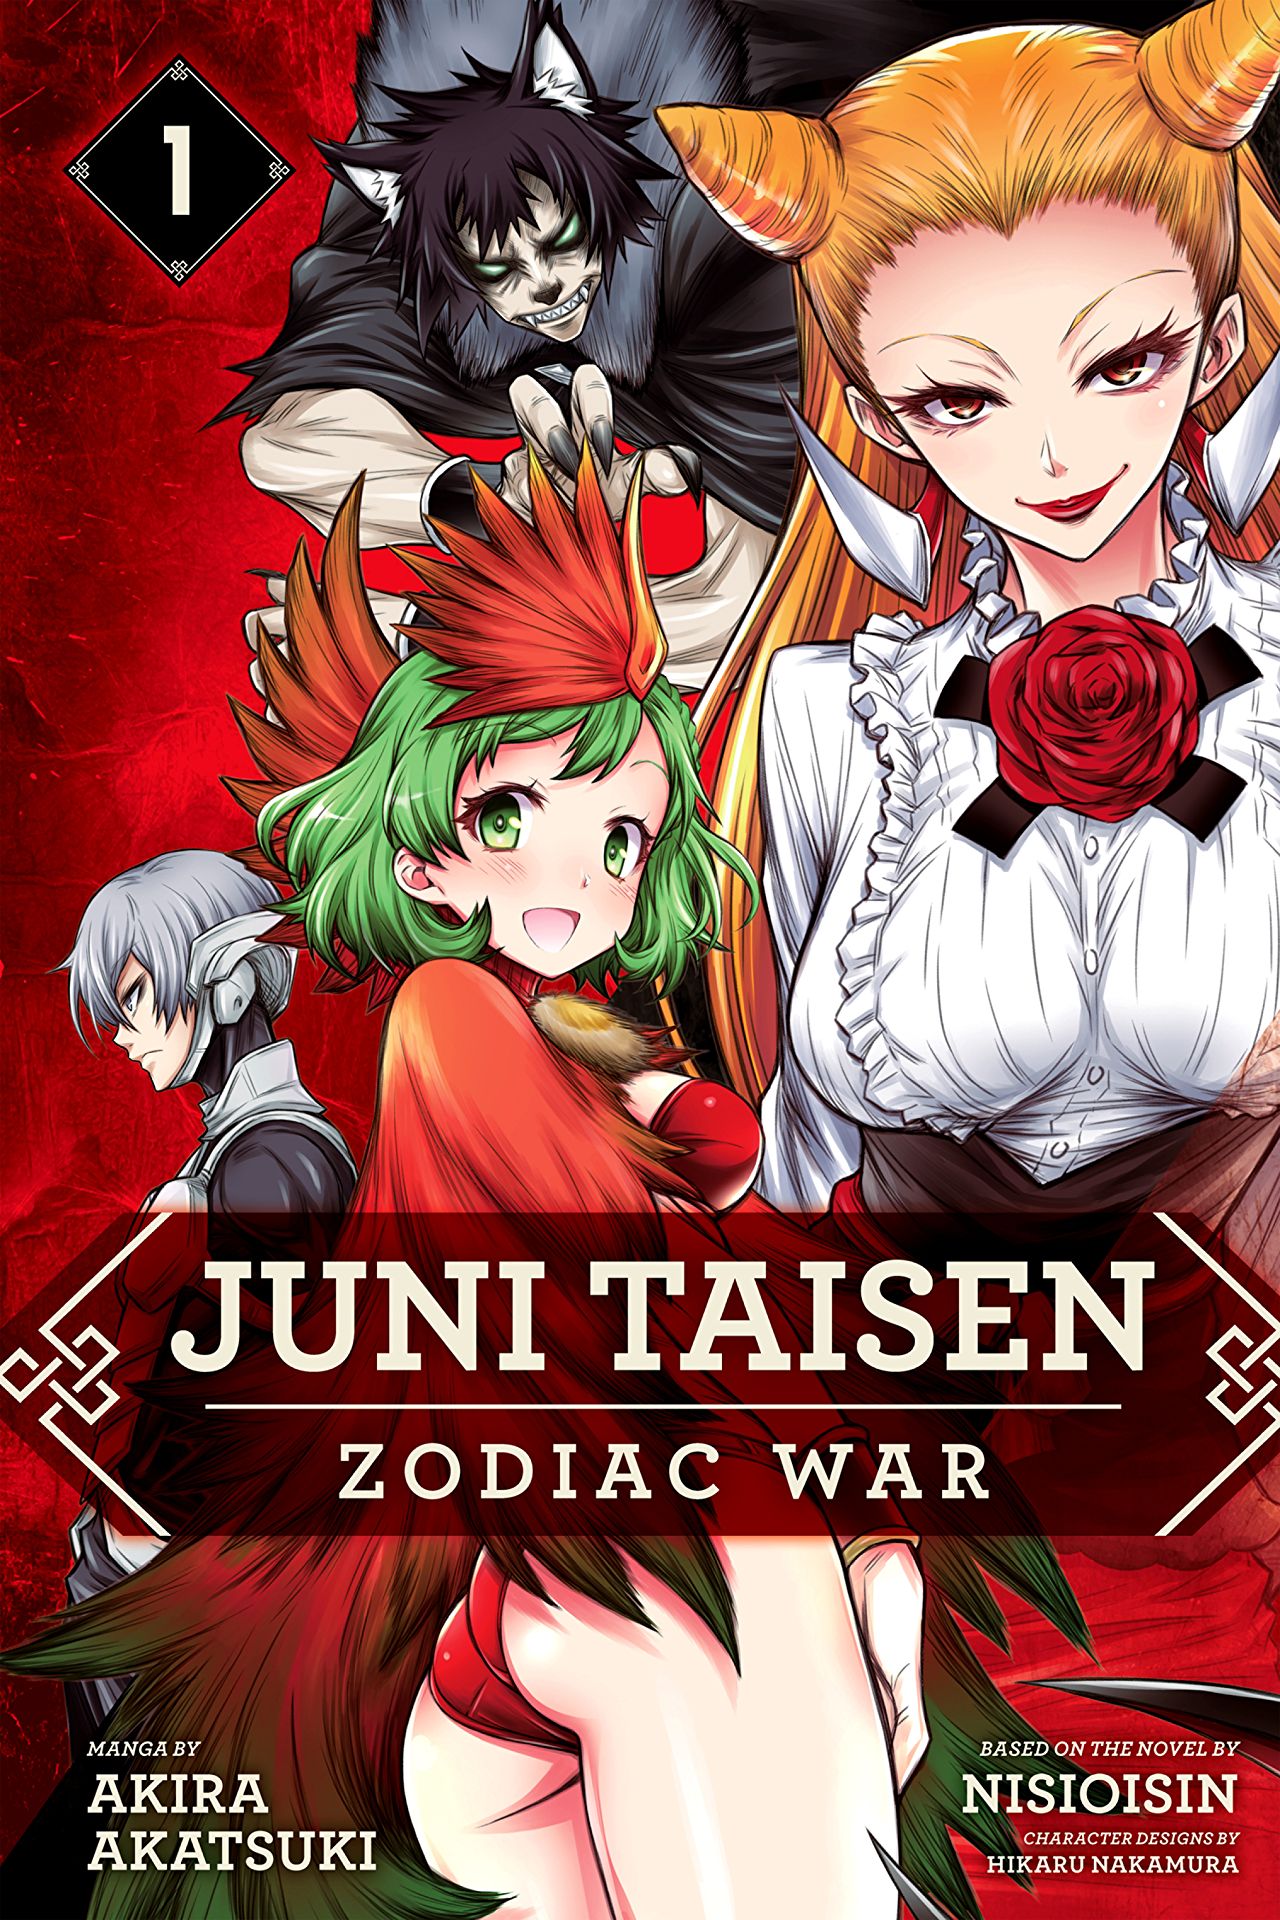 Juni Taisen: Zodiac War Vol. 1 Review